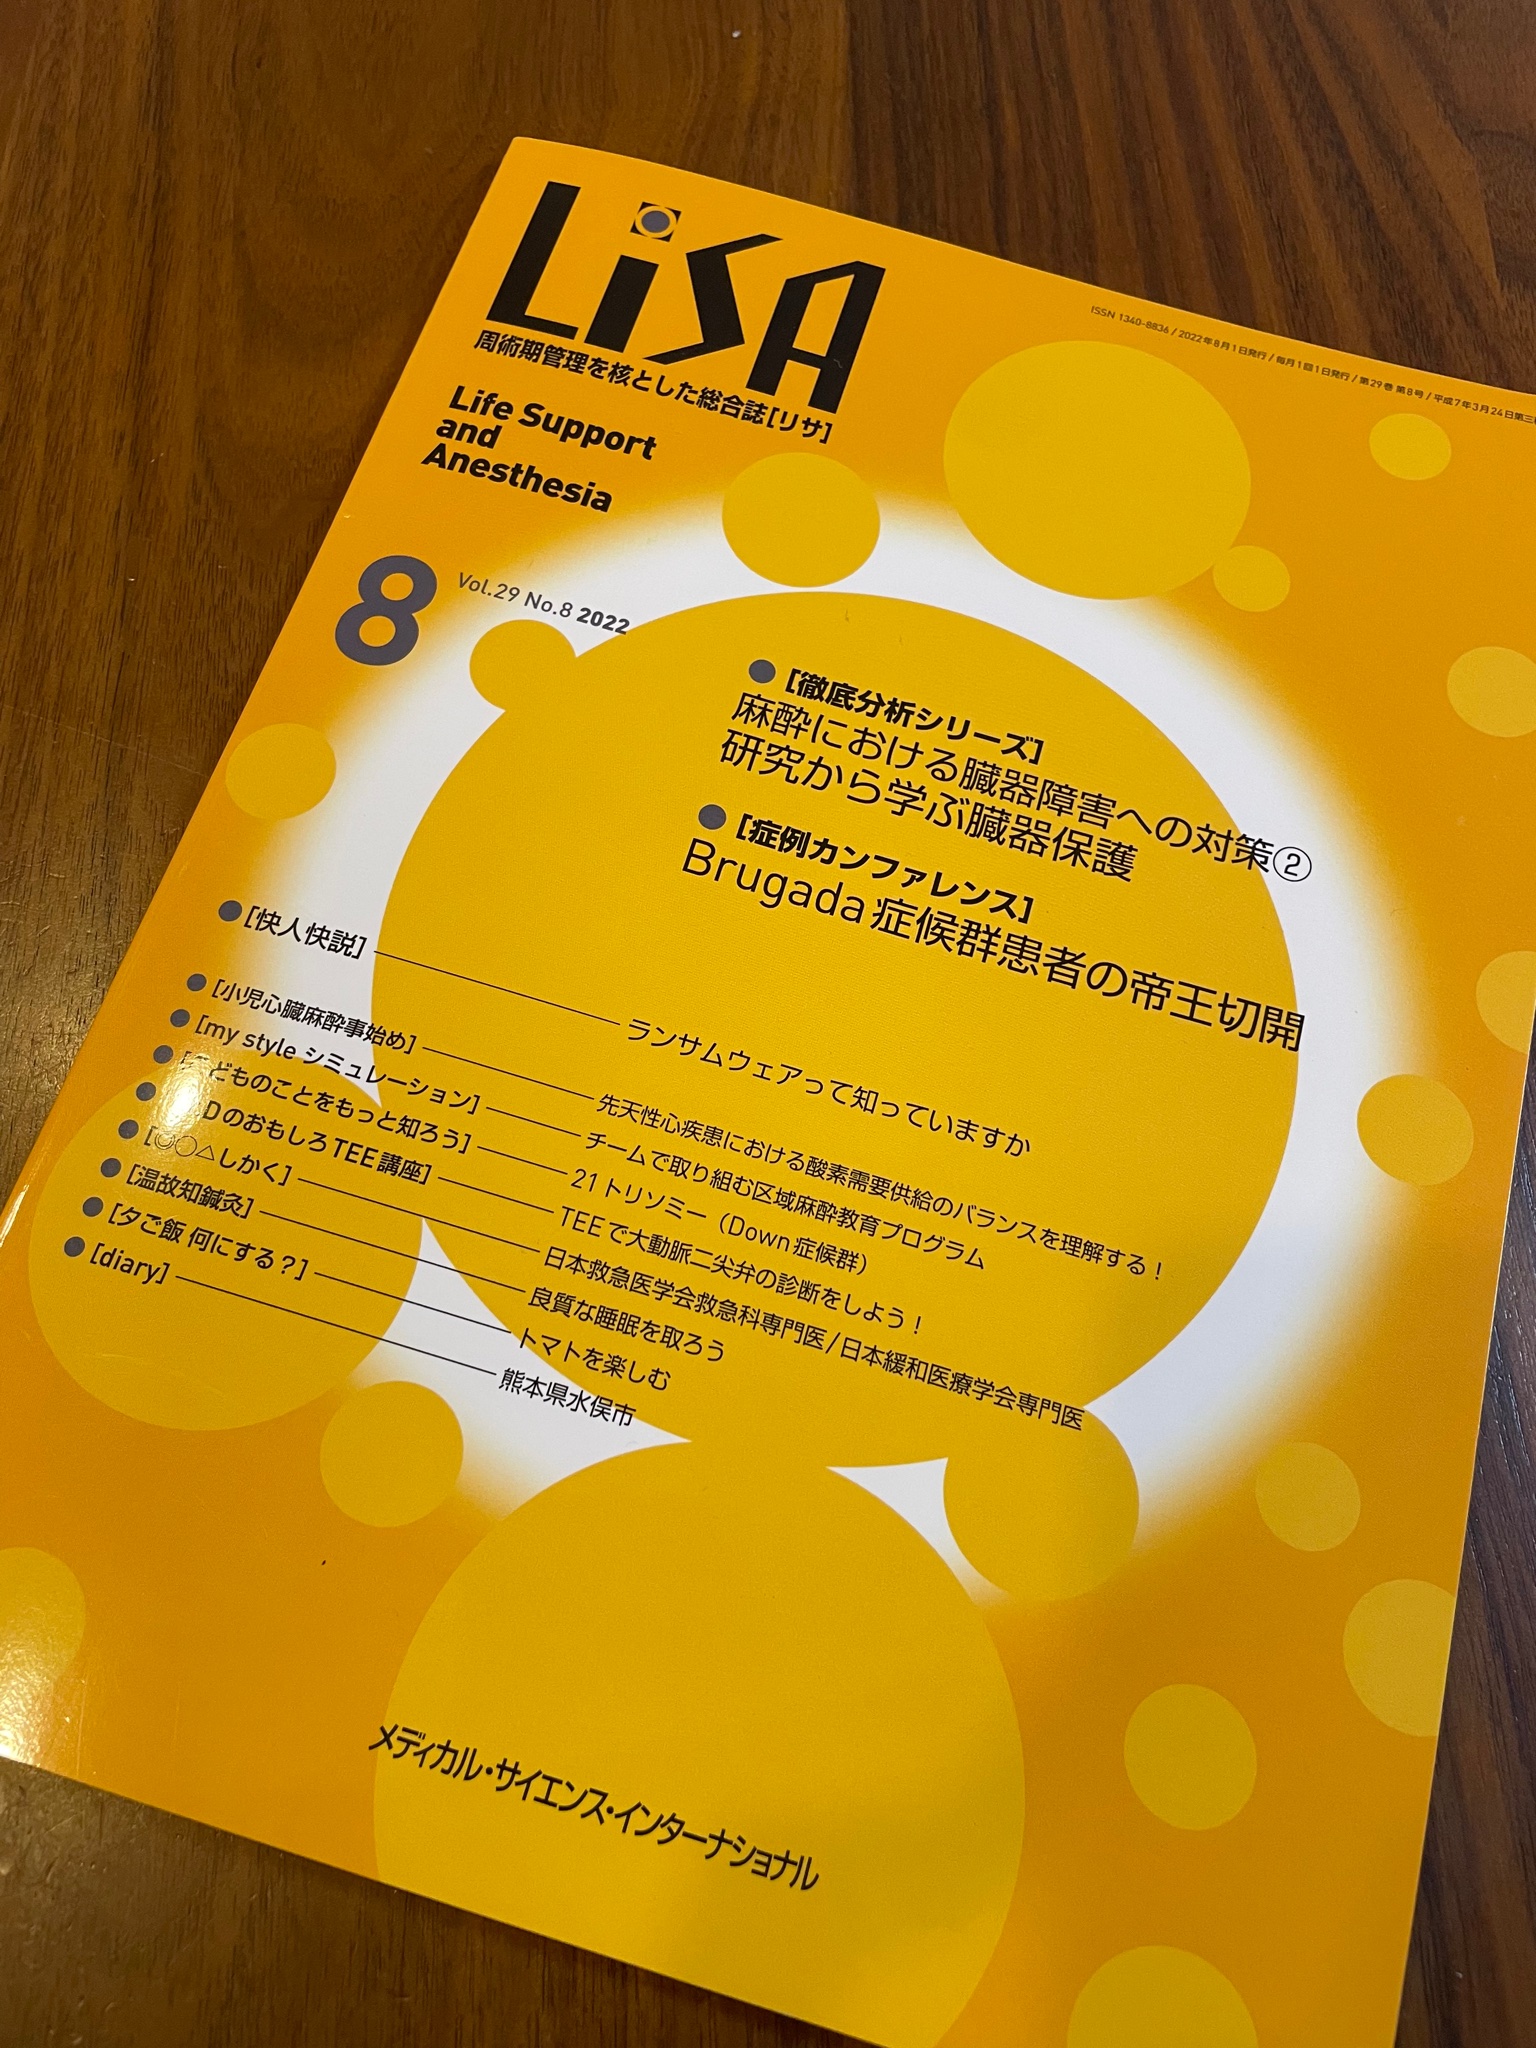 2022特集 LiSA 2022年(Vol.29) 麻酔 周術間管理を核とした総合誌 10冊